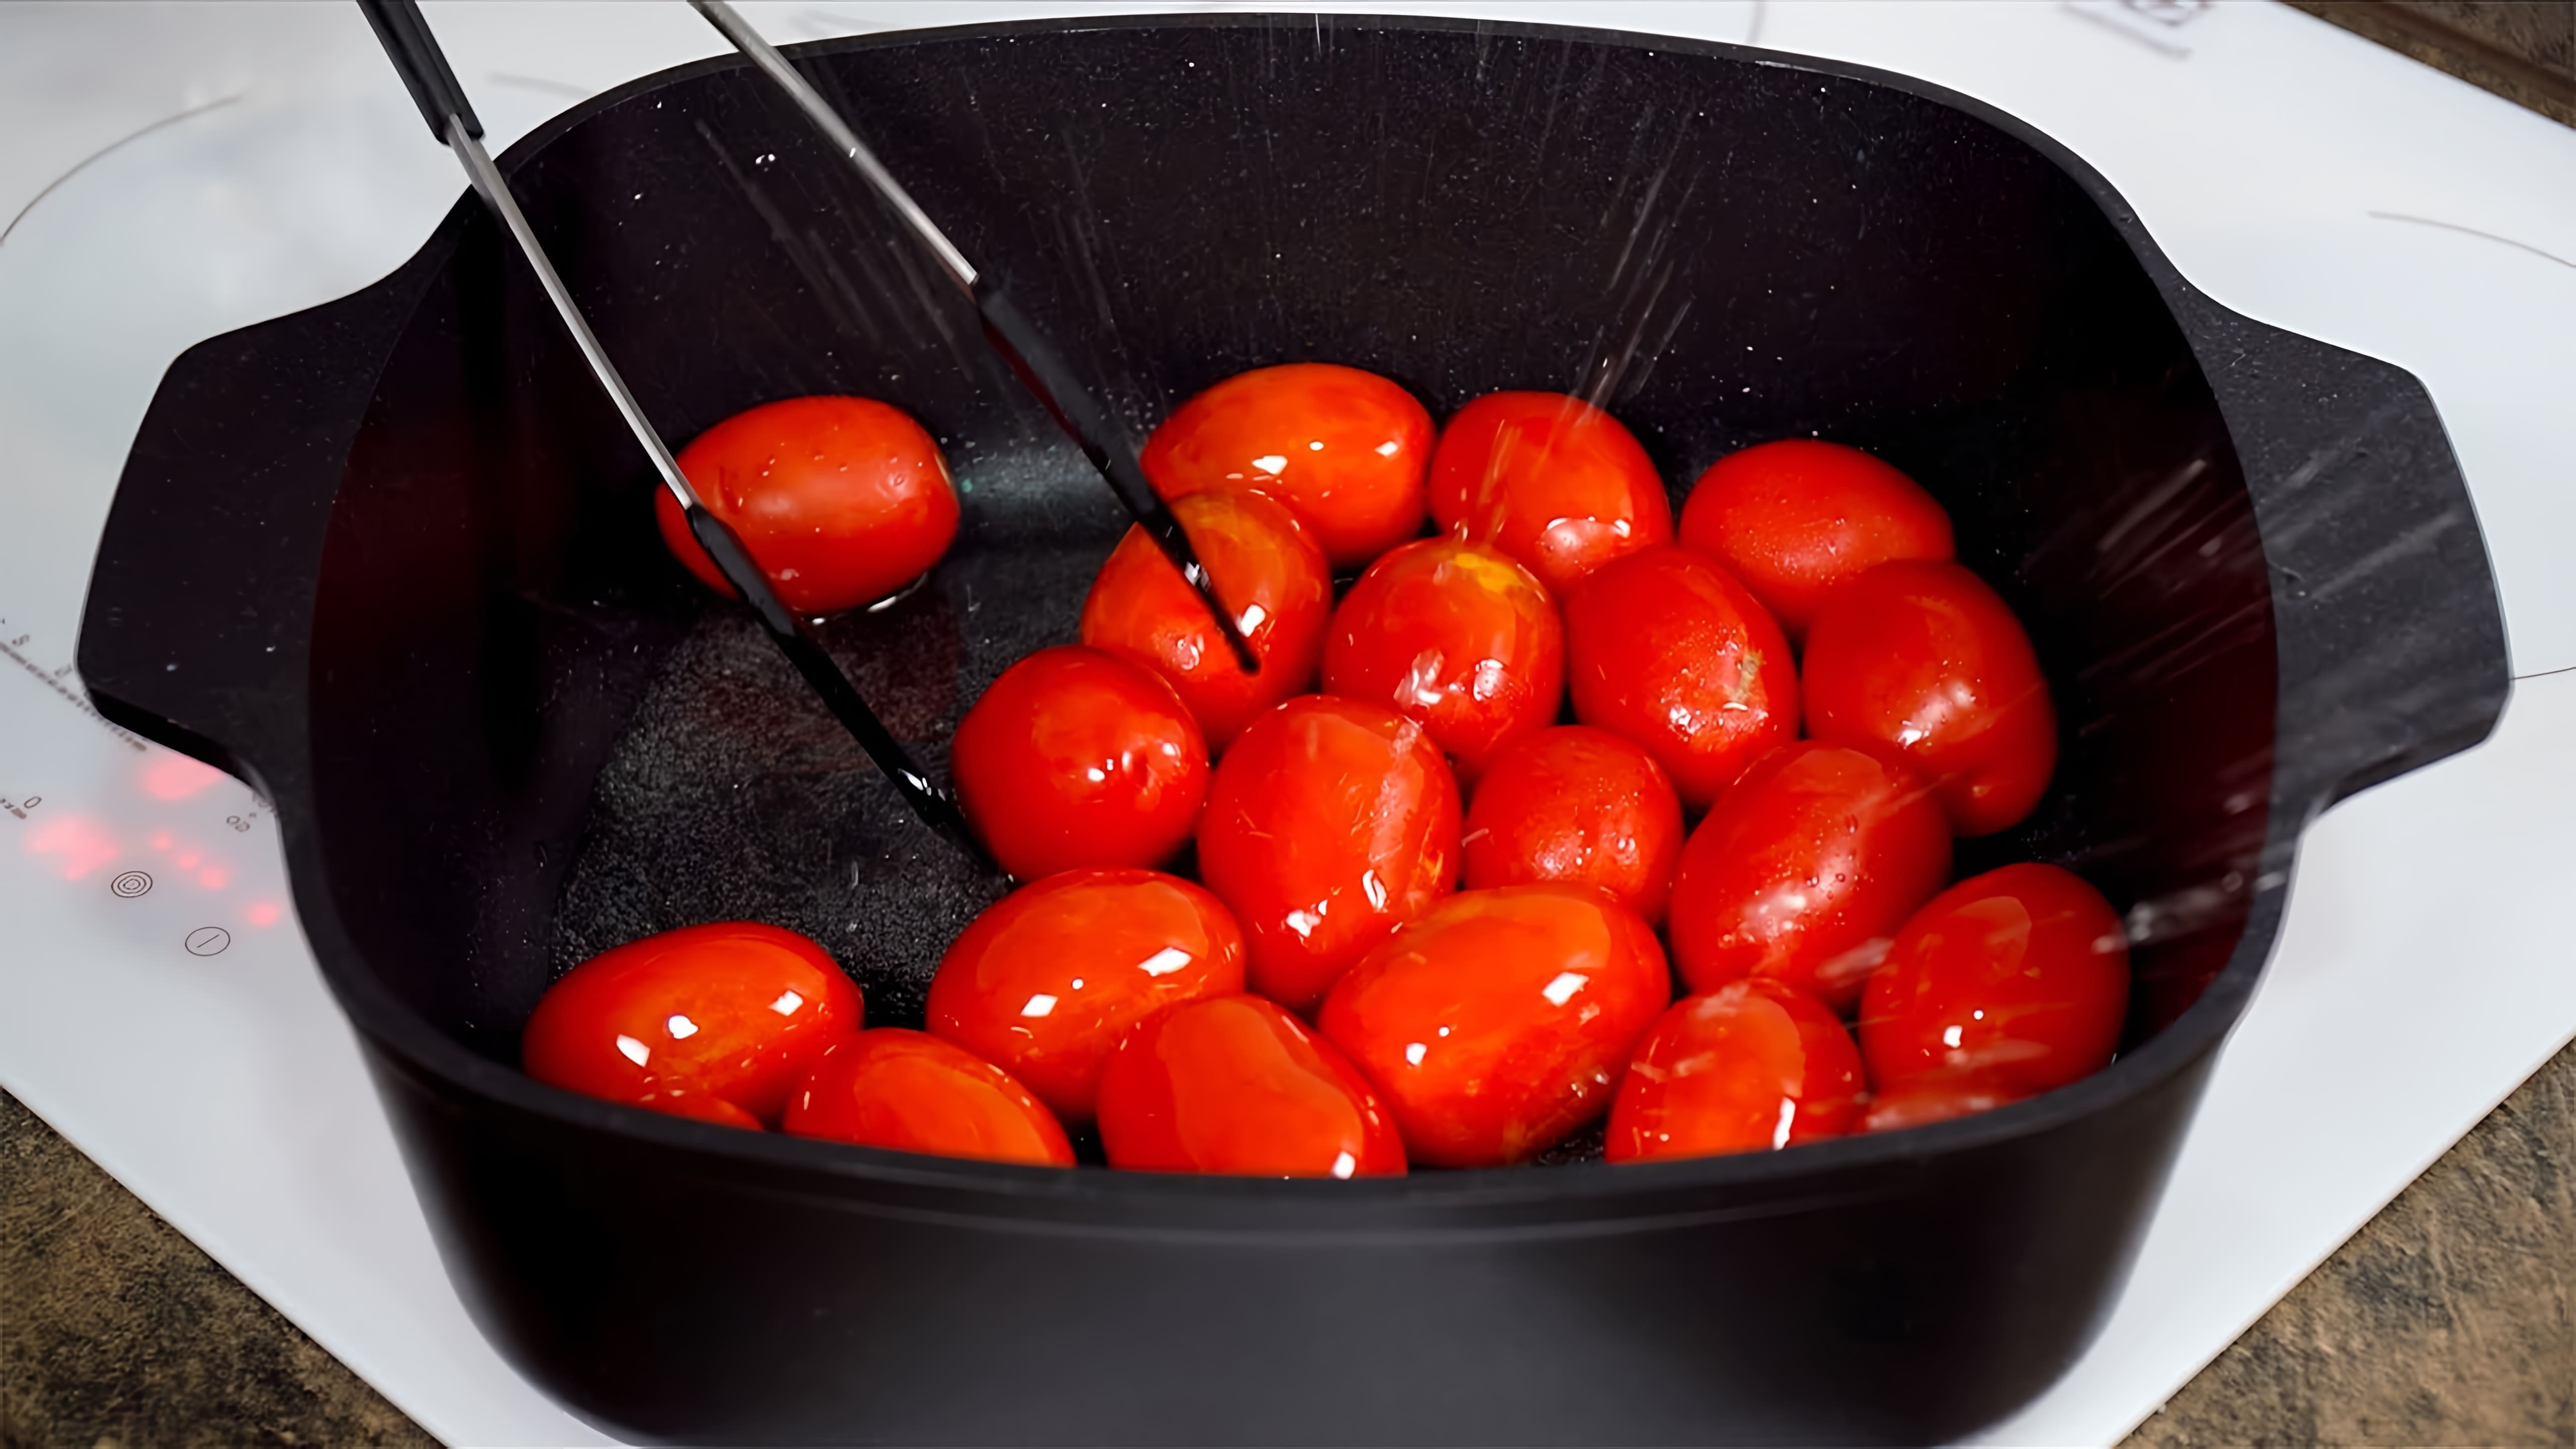 Видео рассматривает 5 методов консервирования помидоров на зиму - маринованные, сушеные, жареные, томатный сок и маринованные жареные помидоры